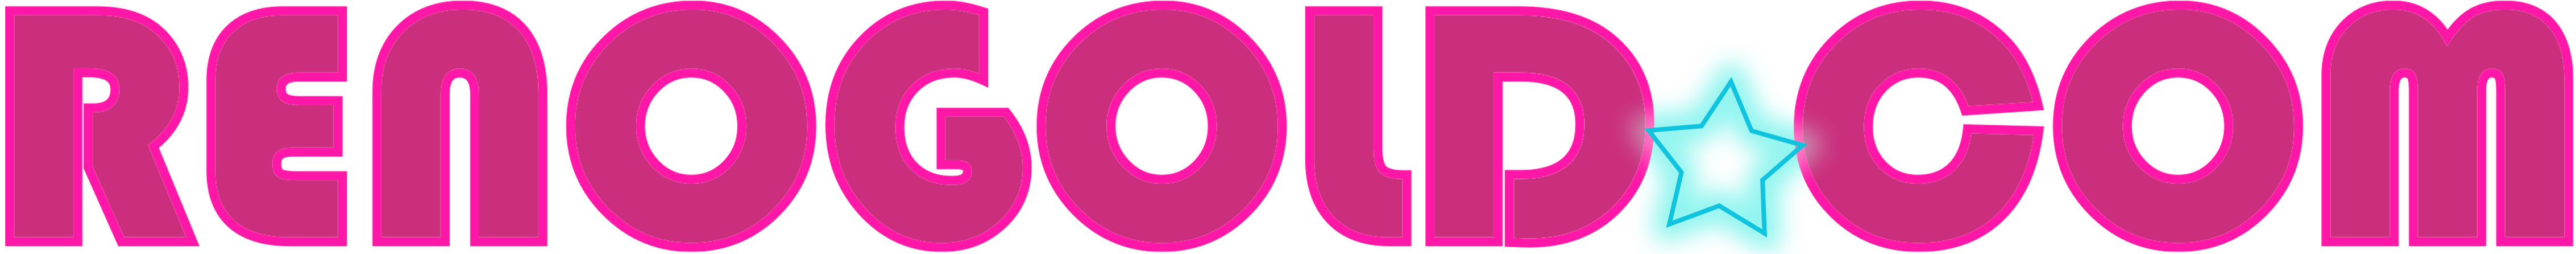 topfanvids logo